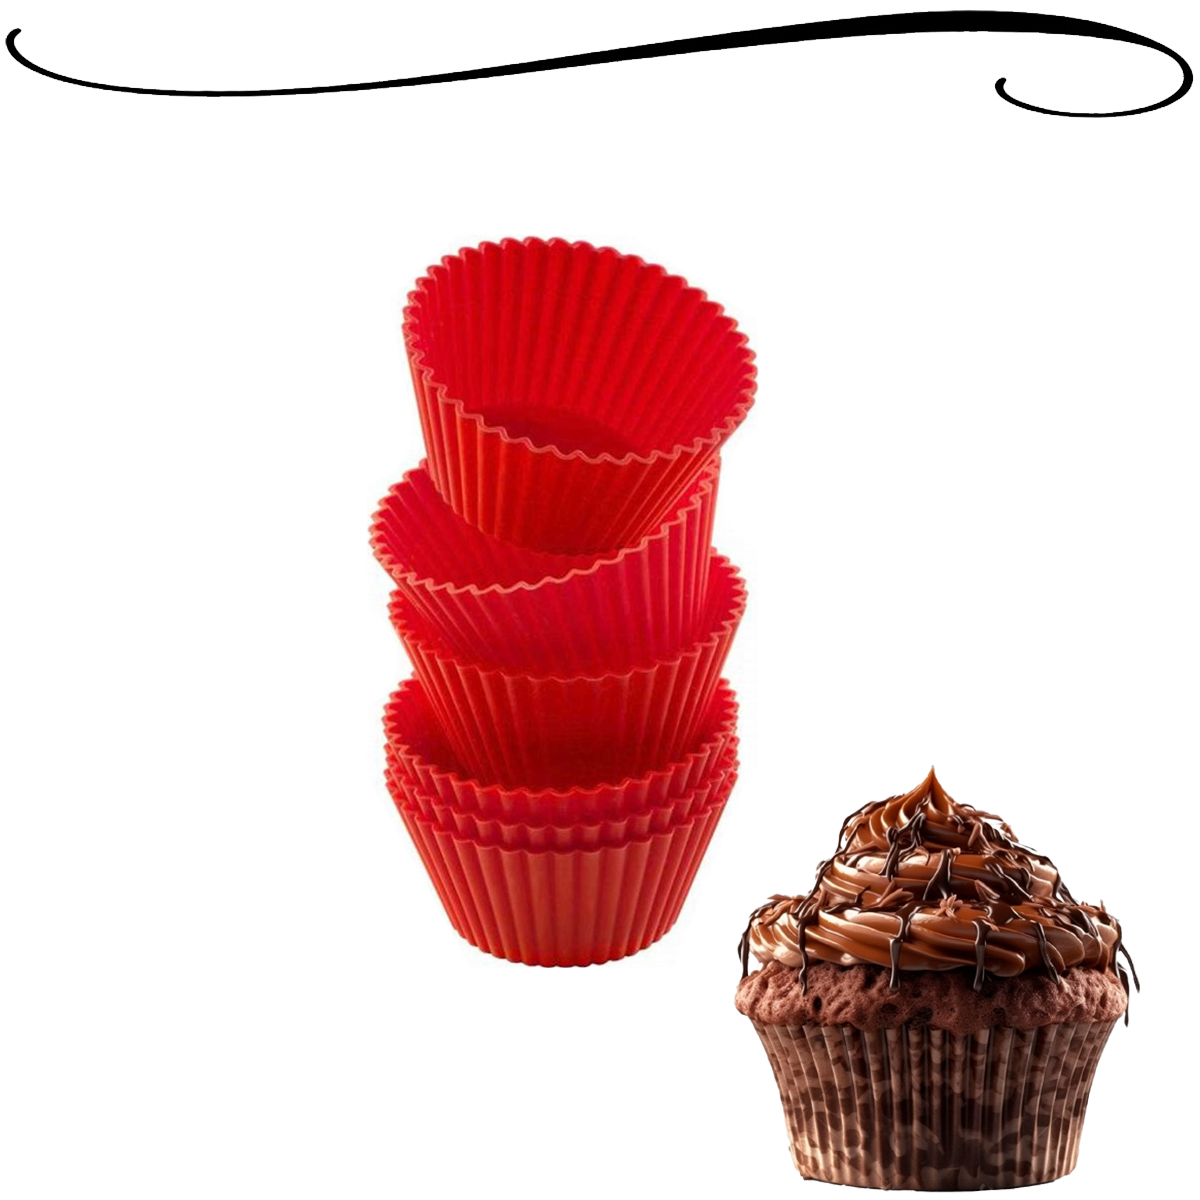 Jogo de 6 Forminhas de Cupcakes de Silicone Livre de BPA Resistente a Altas e Baixas Temperaturas Utensílio Culinário